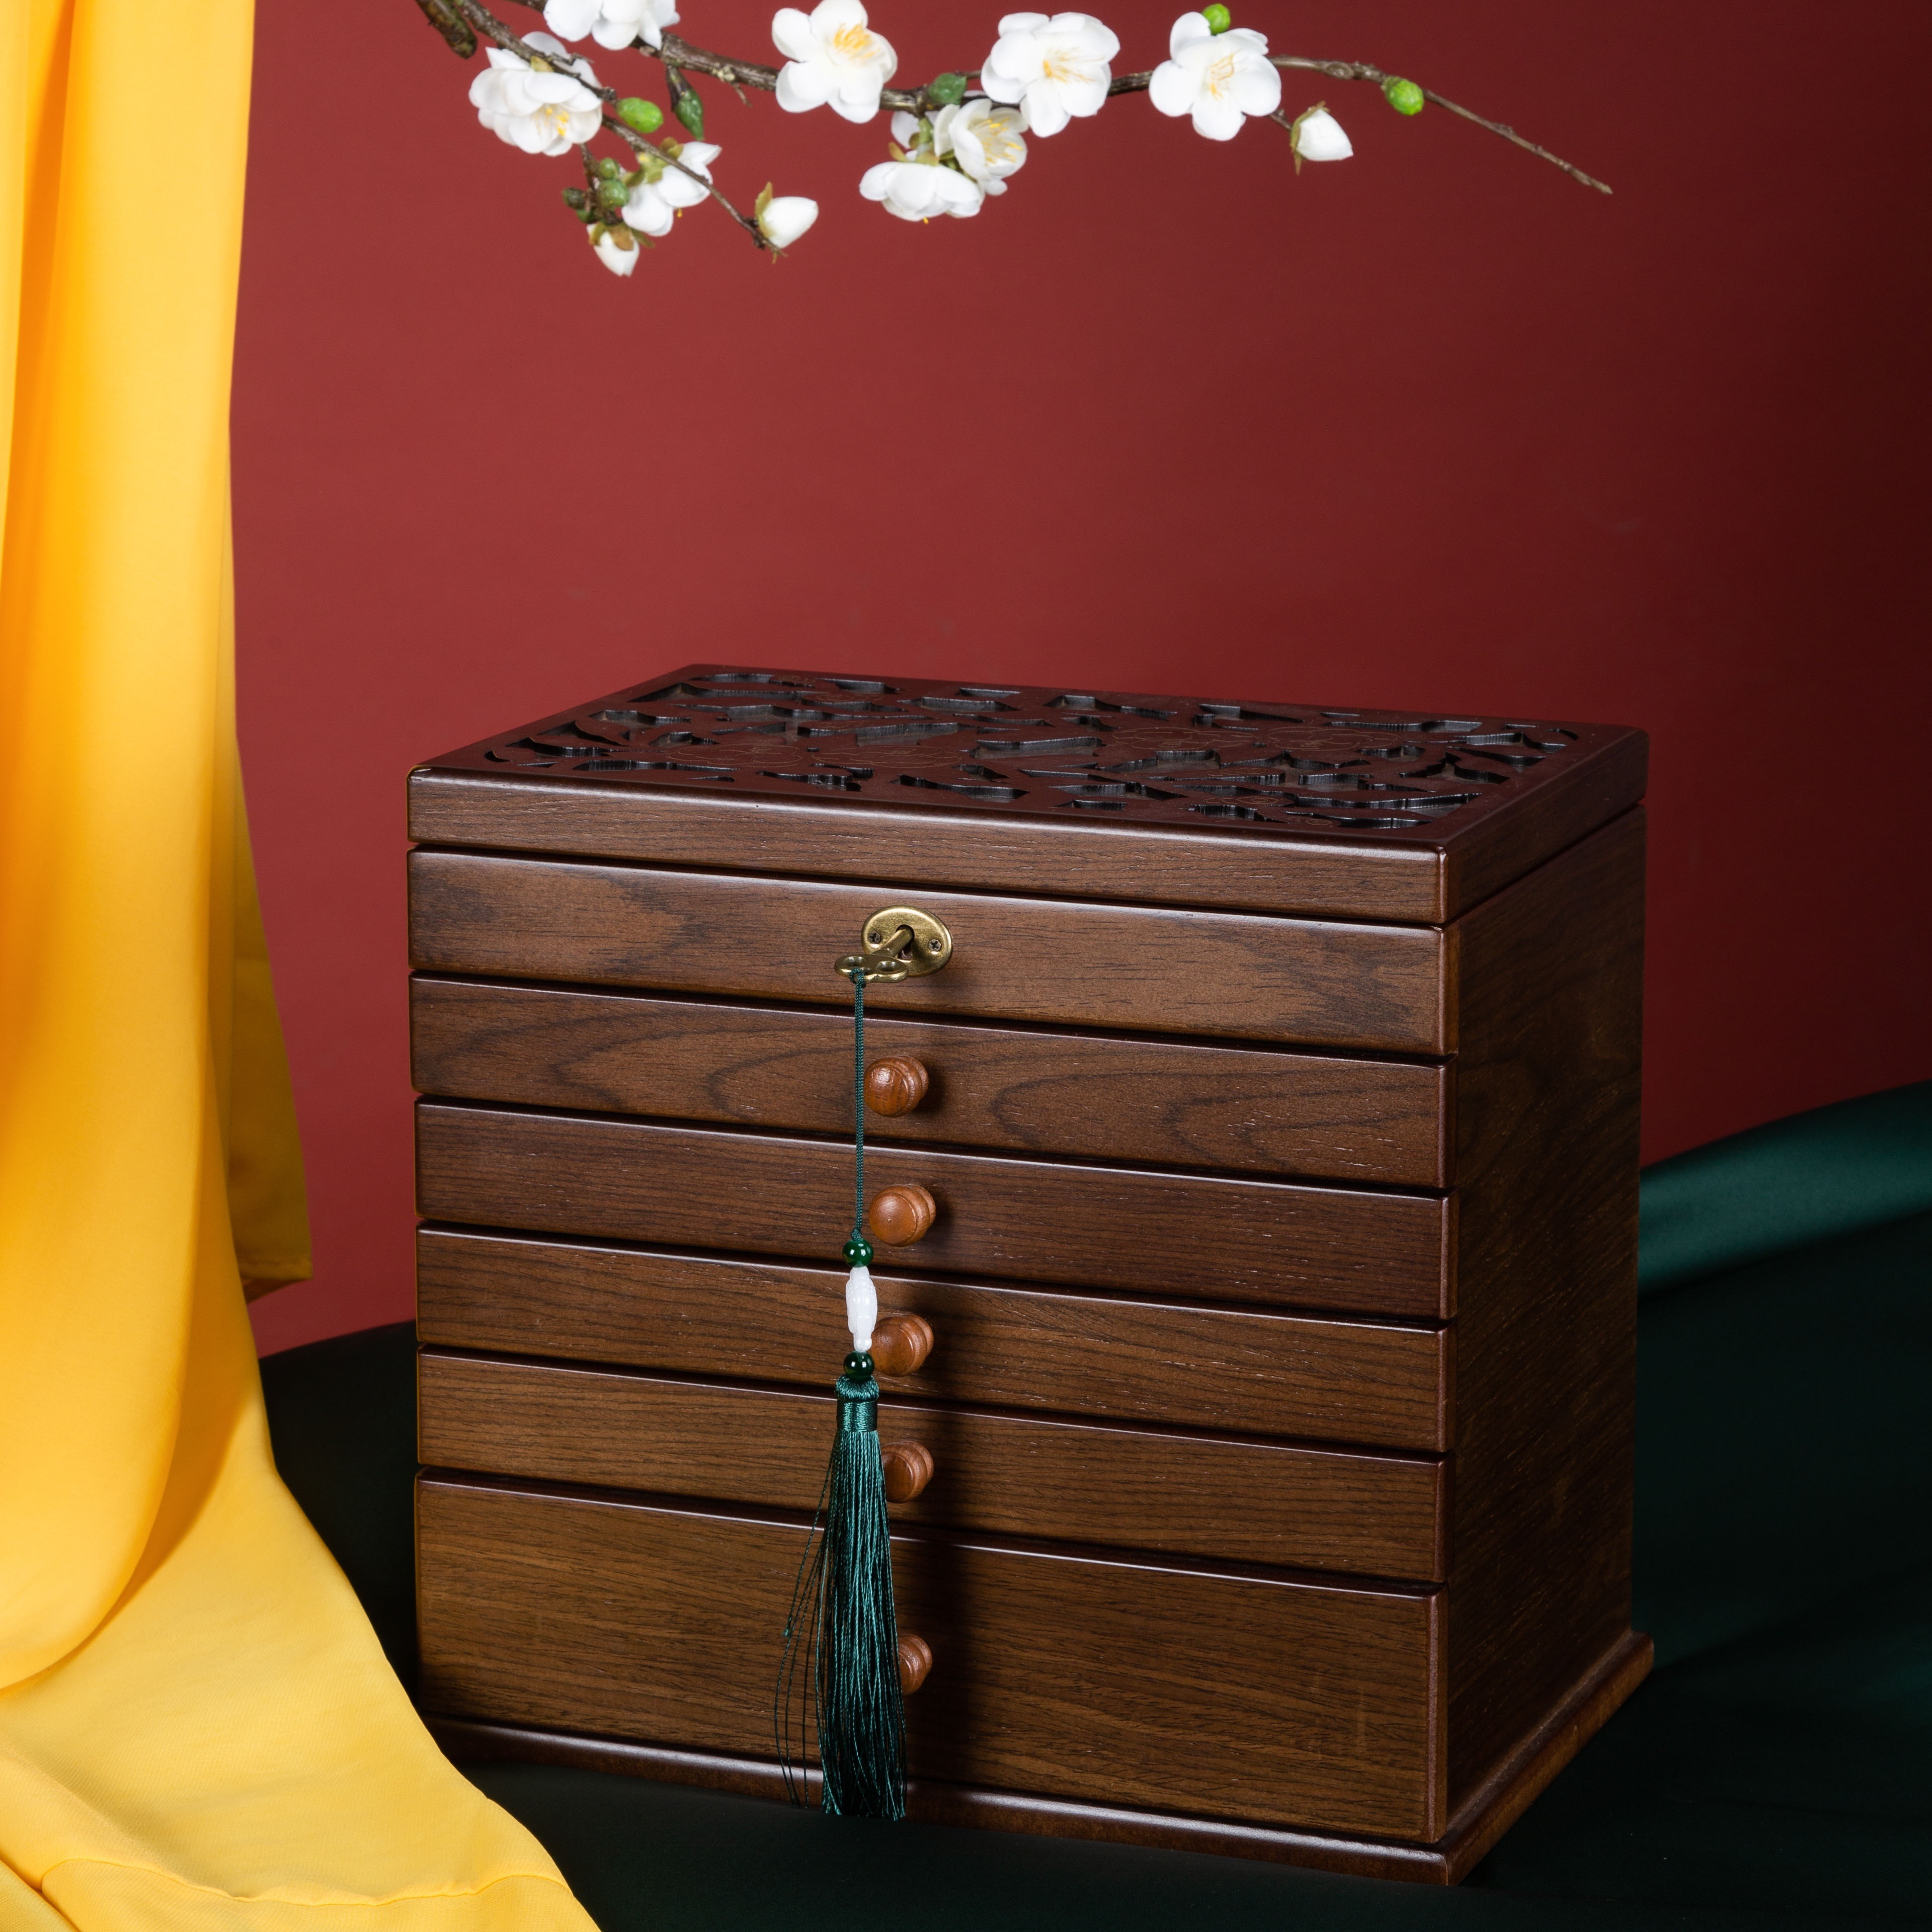 Caja joyero de madera pintado artesanal marron